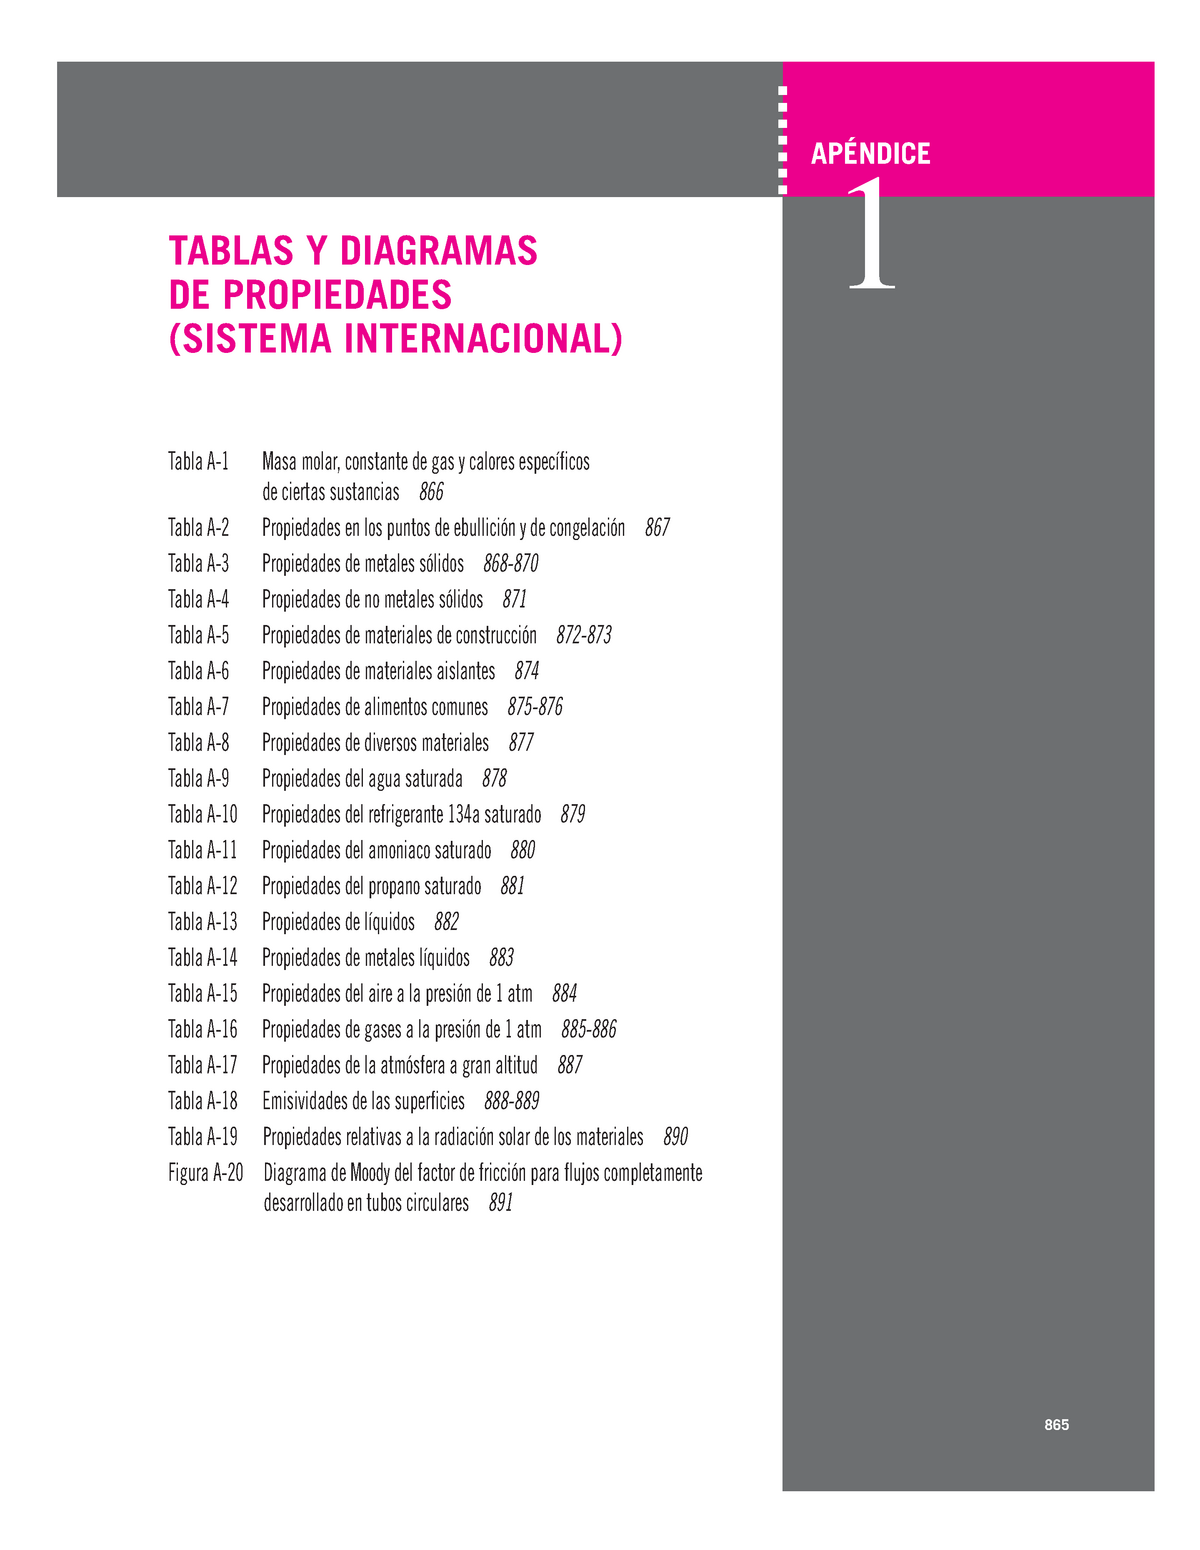 Tablas y diagramas de propiedades (sist. internacional y sist. ingles) -  Cengel_Ap1 7:21 PM Page 865 - Studocu